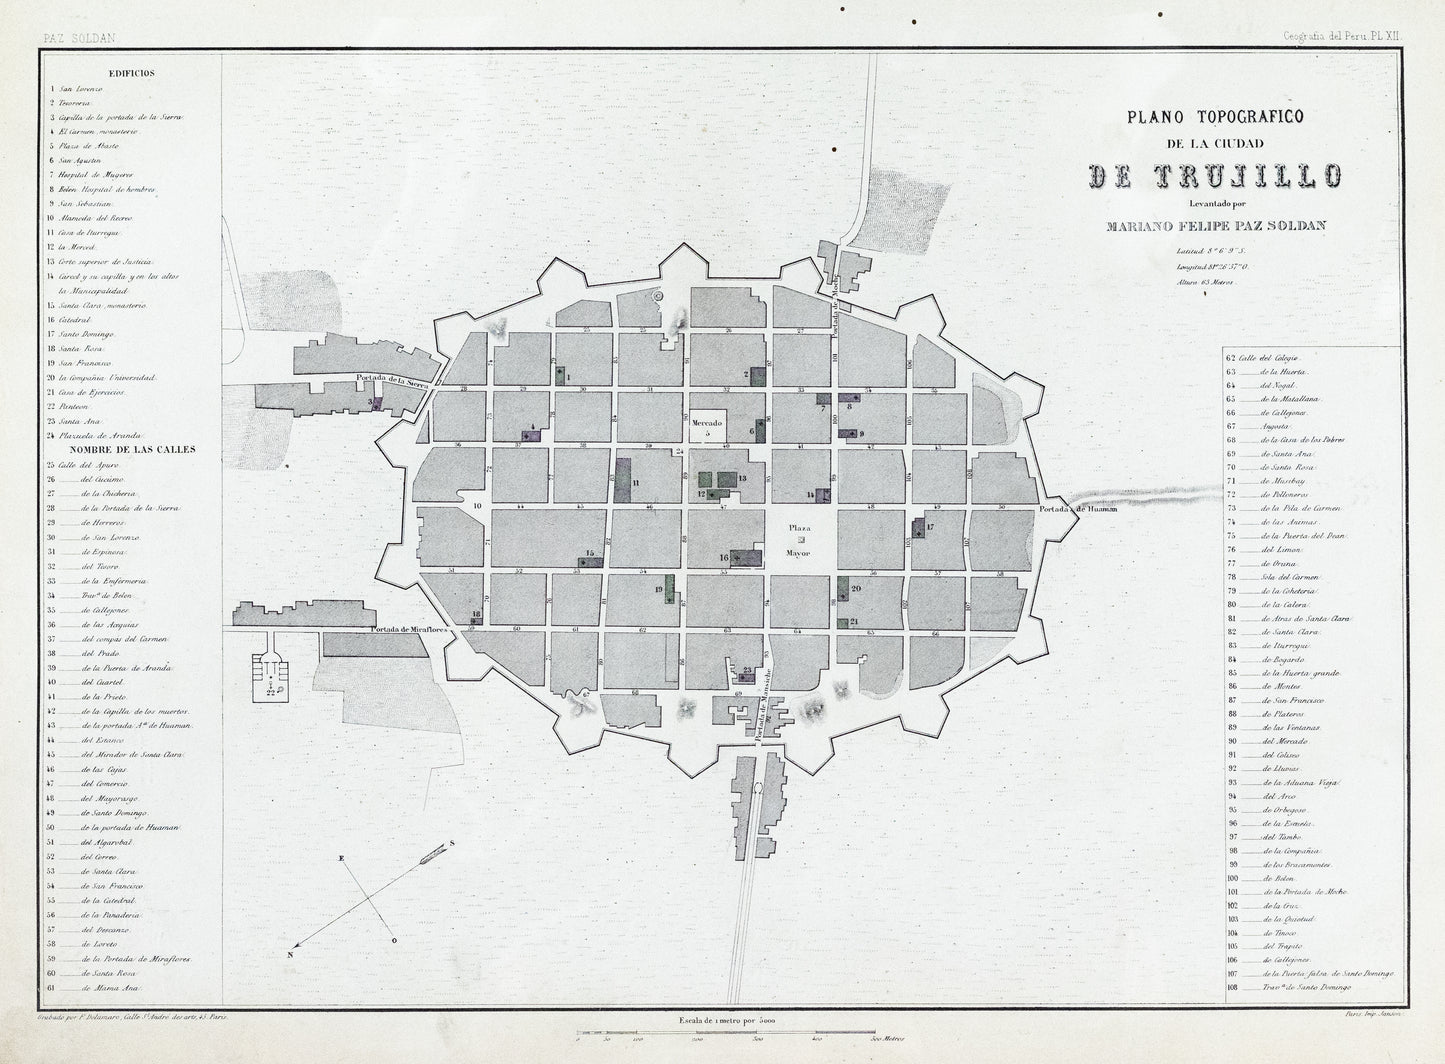 Soldan, Paz. Plano Topografico de la Ciudad de Trujillo. Paris, ca. 1865.